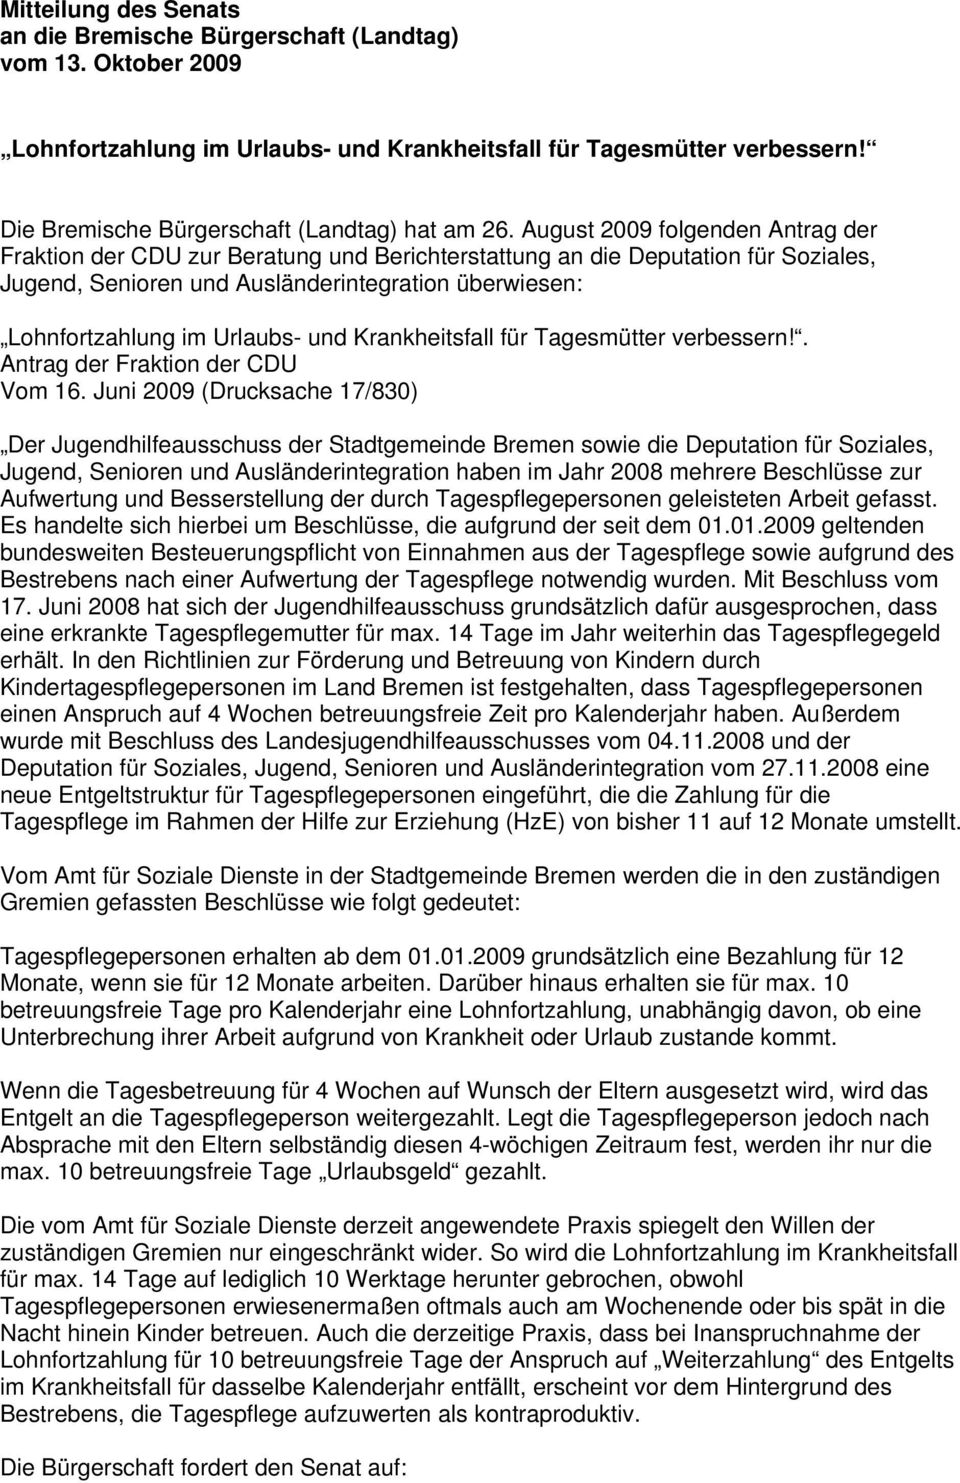 August 2009 folgenden Antrag der Fraktion der CDU zur Beratung und Berichterstattung an die Deputation für Soziales, Jugend, Senioren und Ausländerintegration überwiesen: Lohnfortzahlung im Urlaubs-